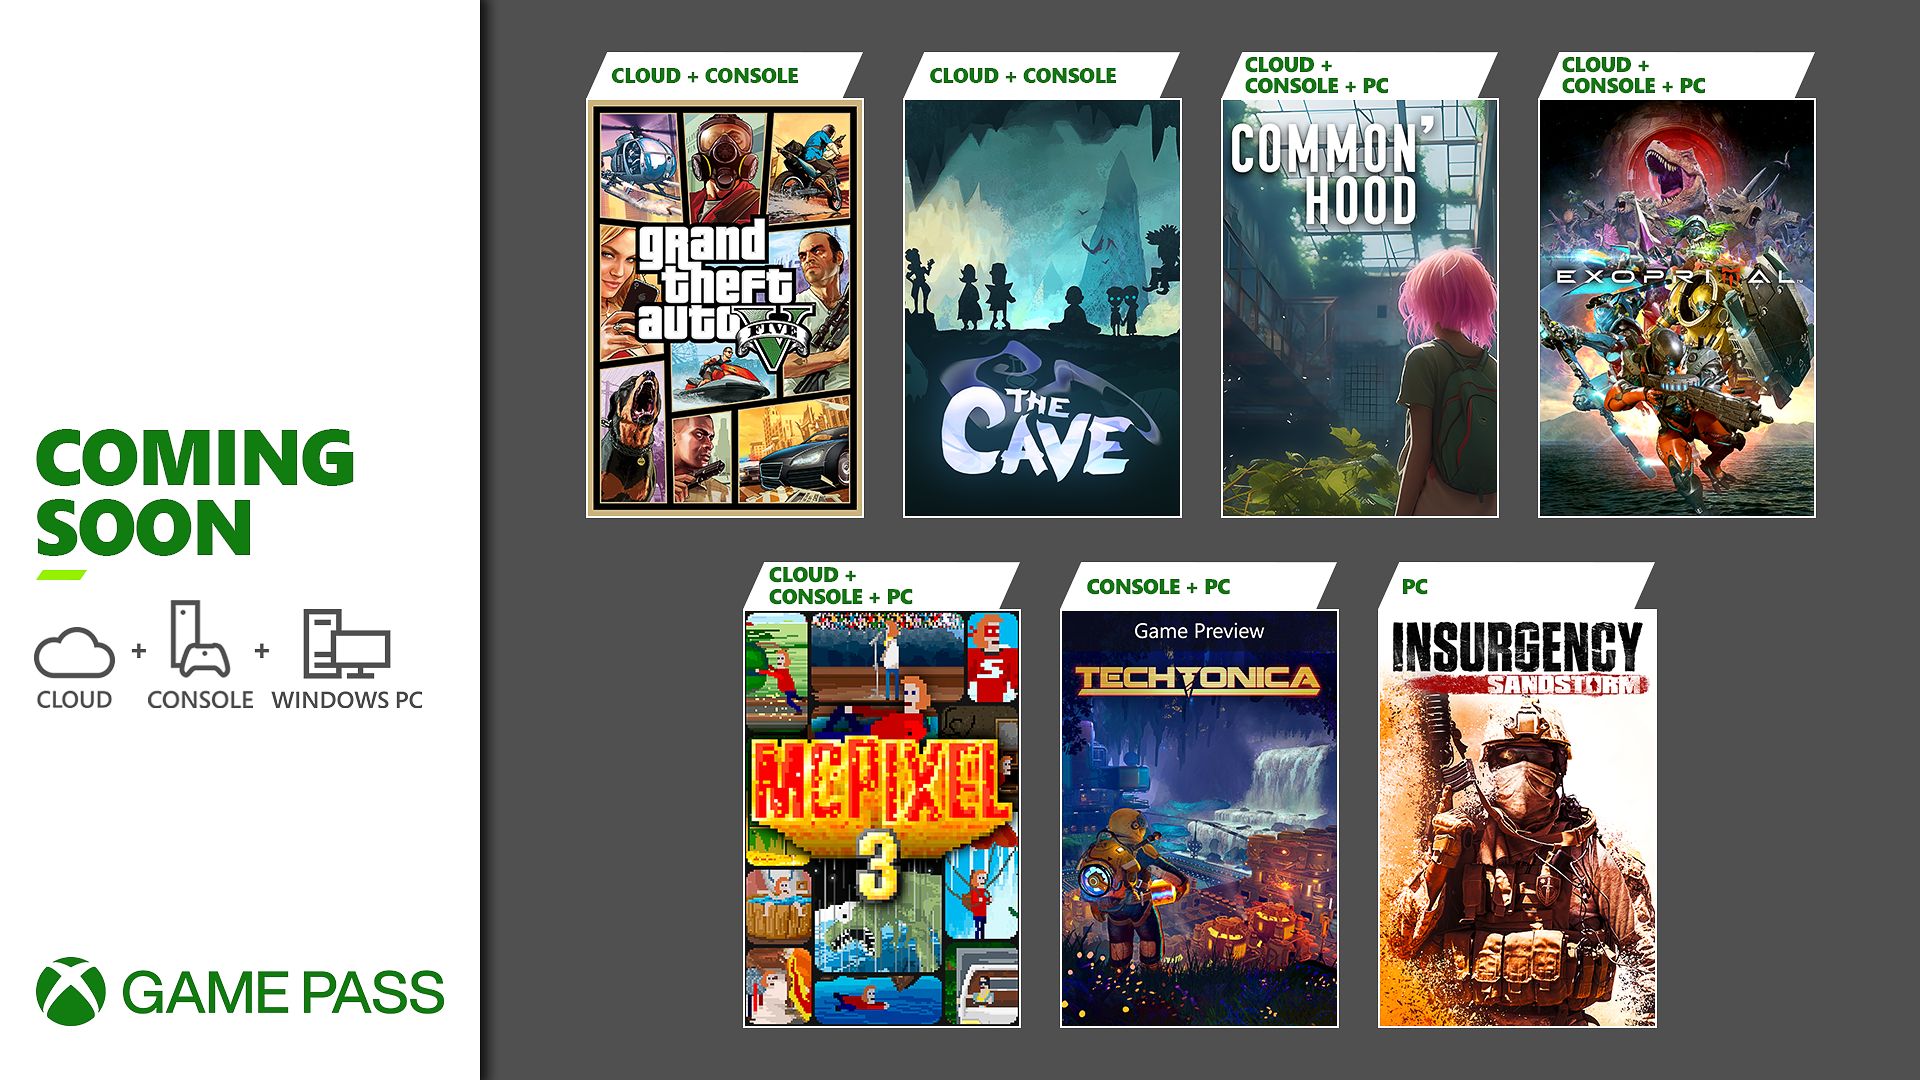 Xbox Game Pass recebe Crunchyroll Premium grátis; veja como resgatar